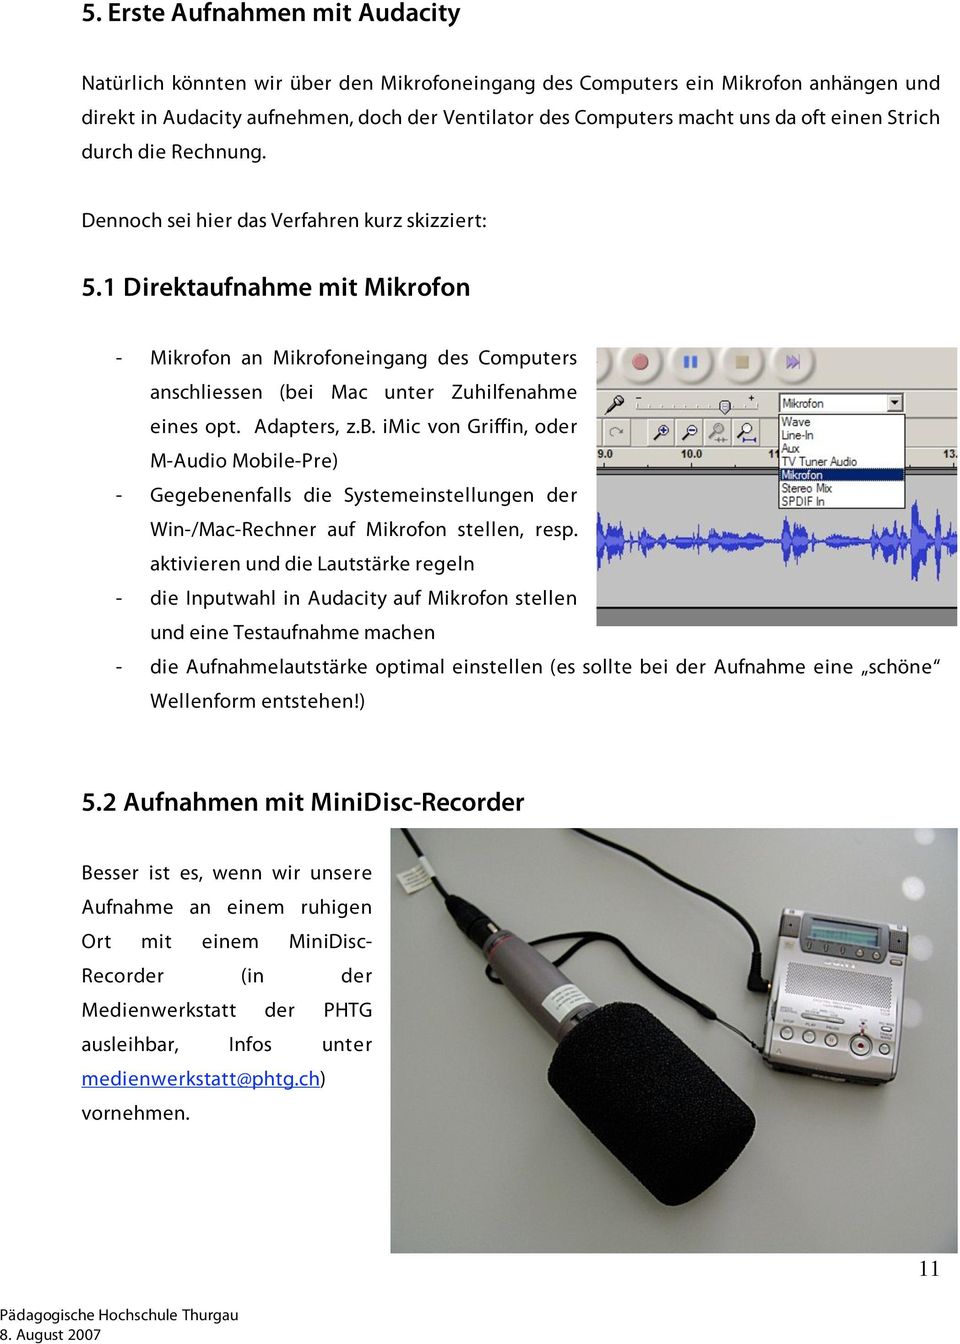 1 Direktaufnahme mit Mikrofon - Mikrofon an Mikrofoneingang des Computers anschliessen (be